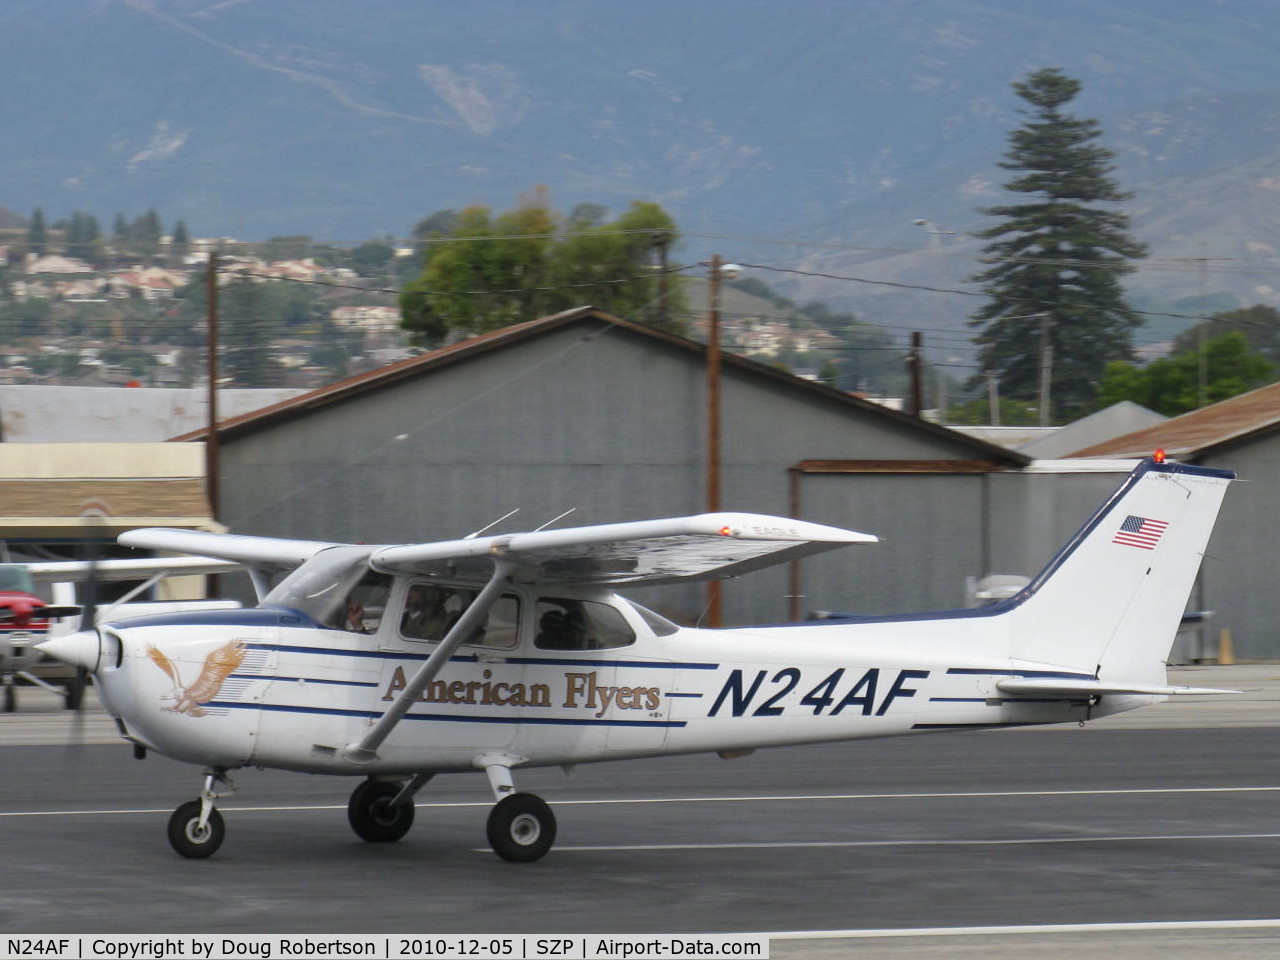 N24AF, 1998 Cessna 172R C/N 17280439, 1998 Cessna 172R SKYHAWK, Lycoming IO-360-L2A 160 Hp, takeoff roll Rwy 22